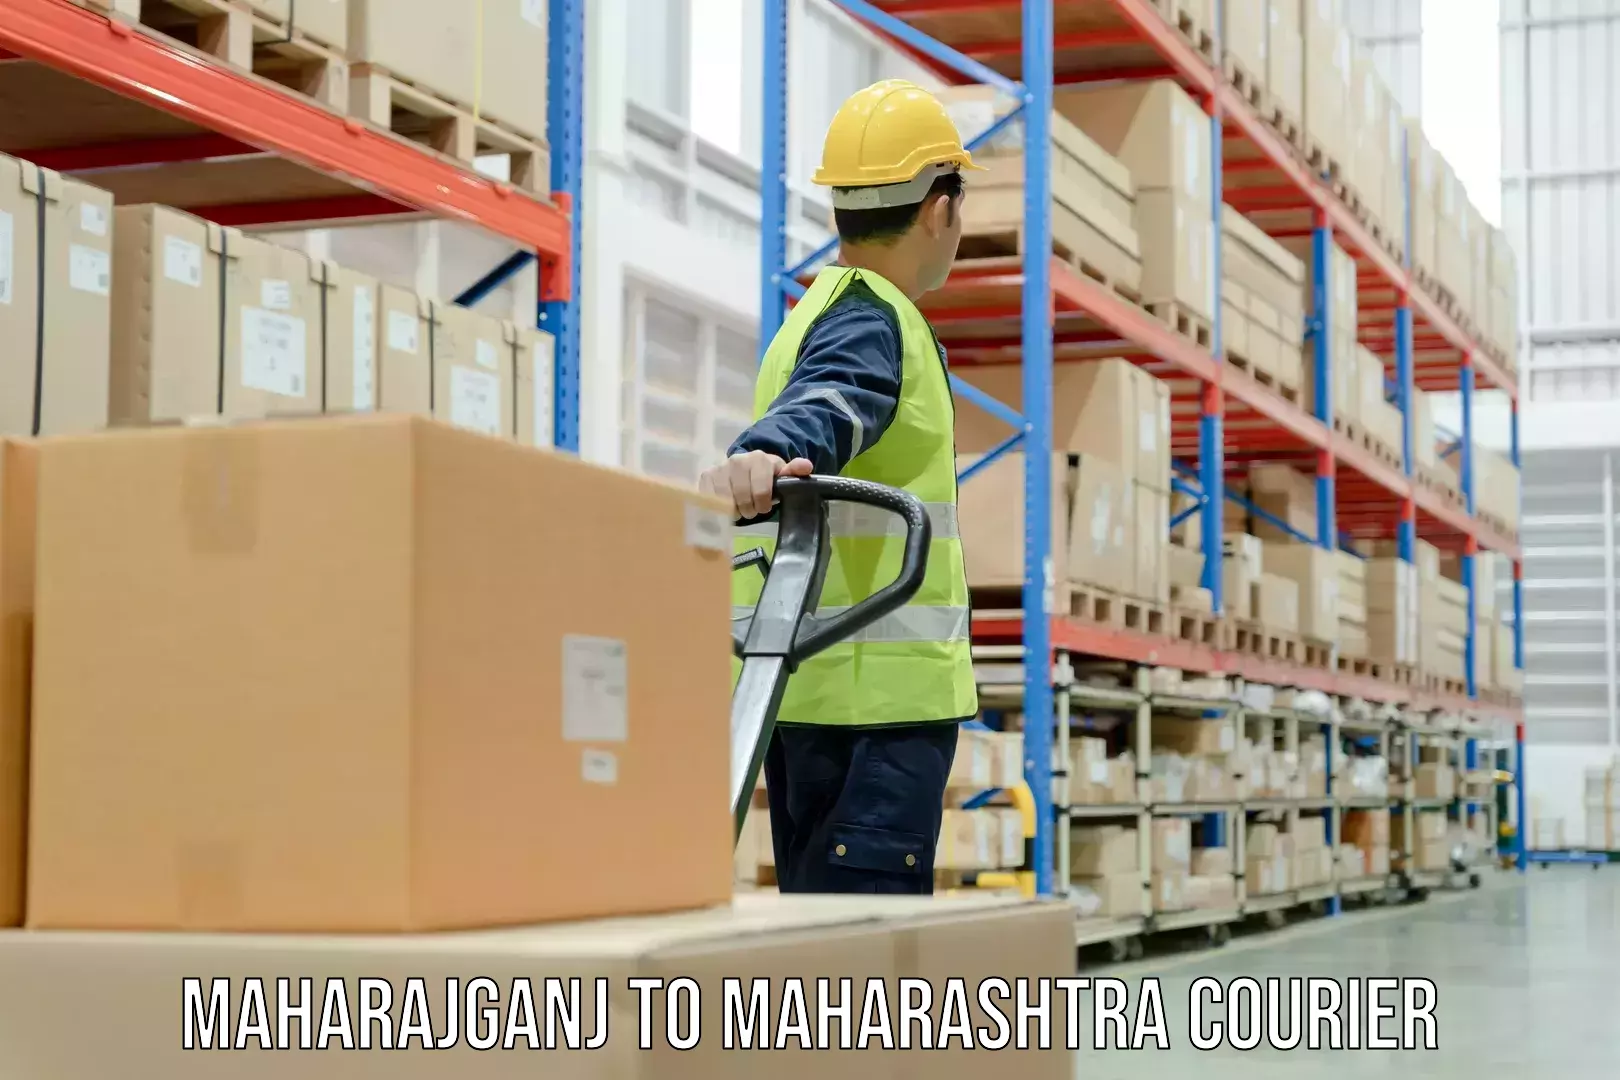 Pharmaceutical courier Maharajganj to Maharashtra